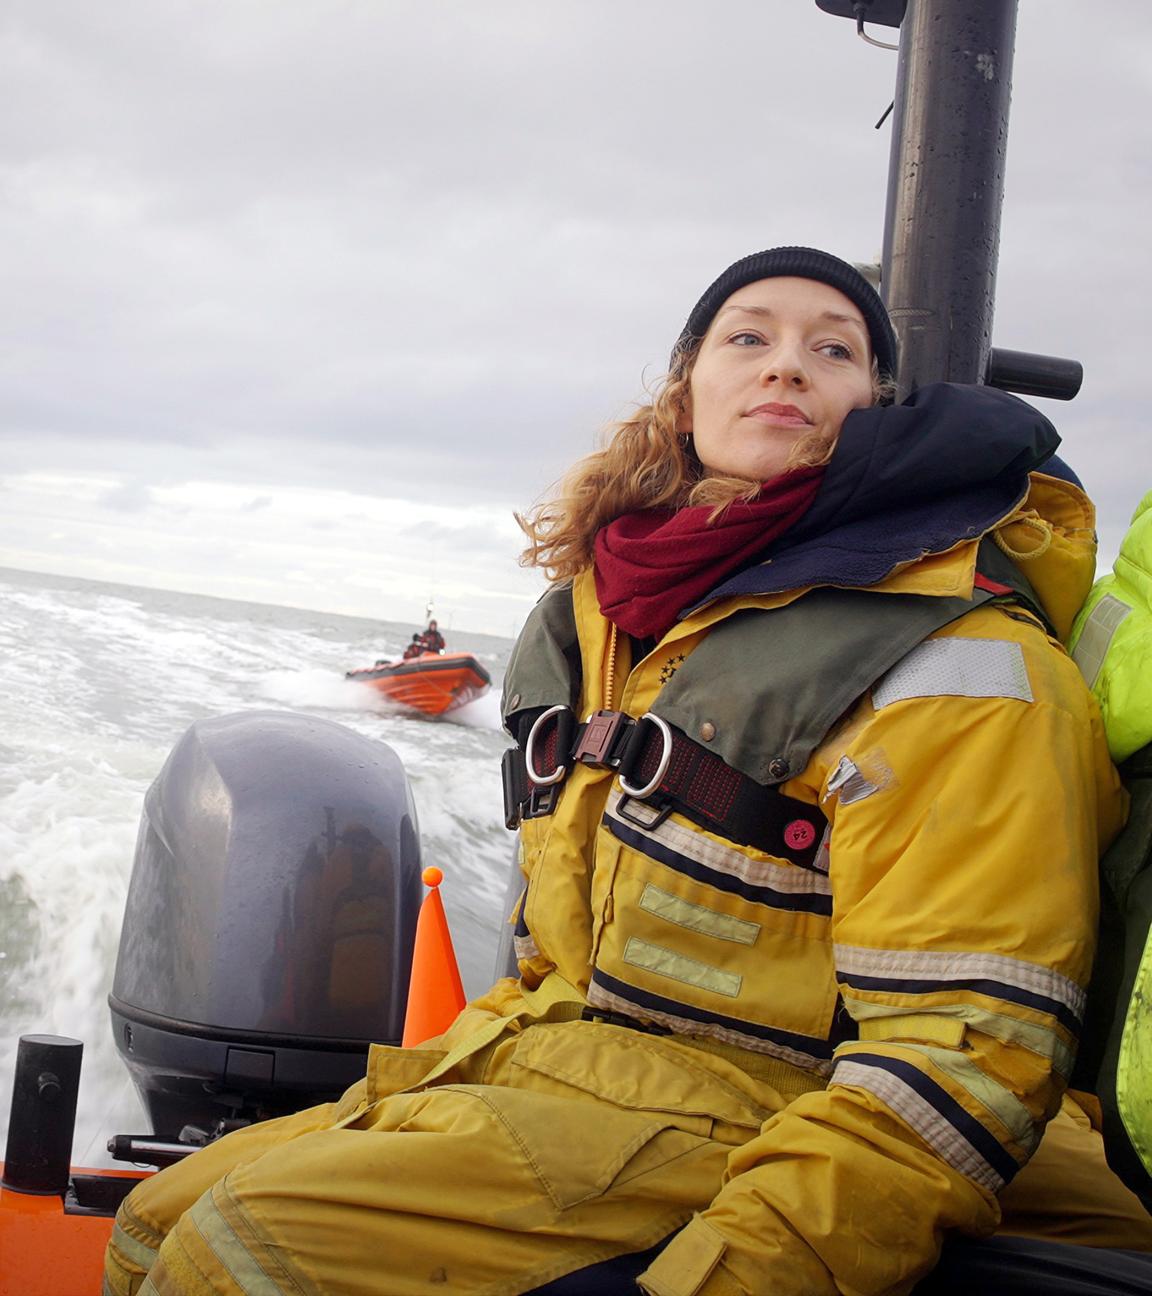 Franziska Saalmann von Greenpeace in gelbem Overall und olivgrüner Schwimmweste fährt im Schlauchboot auf grauer See. Im Hintergrund sieht man ein rotes Boot mit 2 Personen.